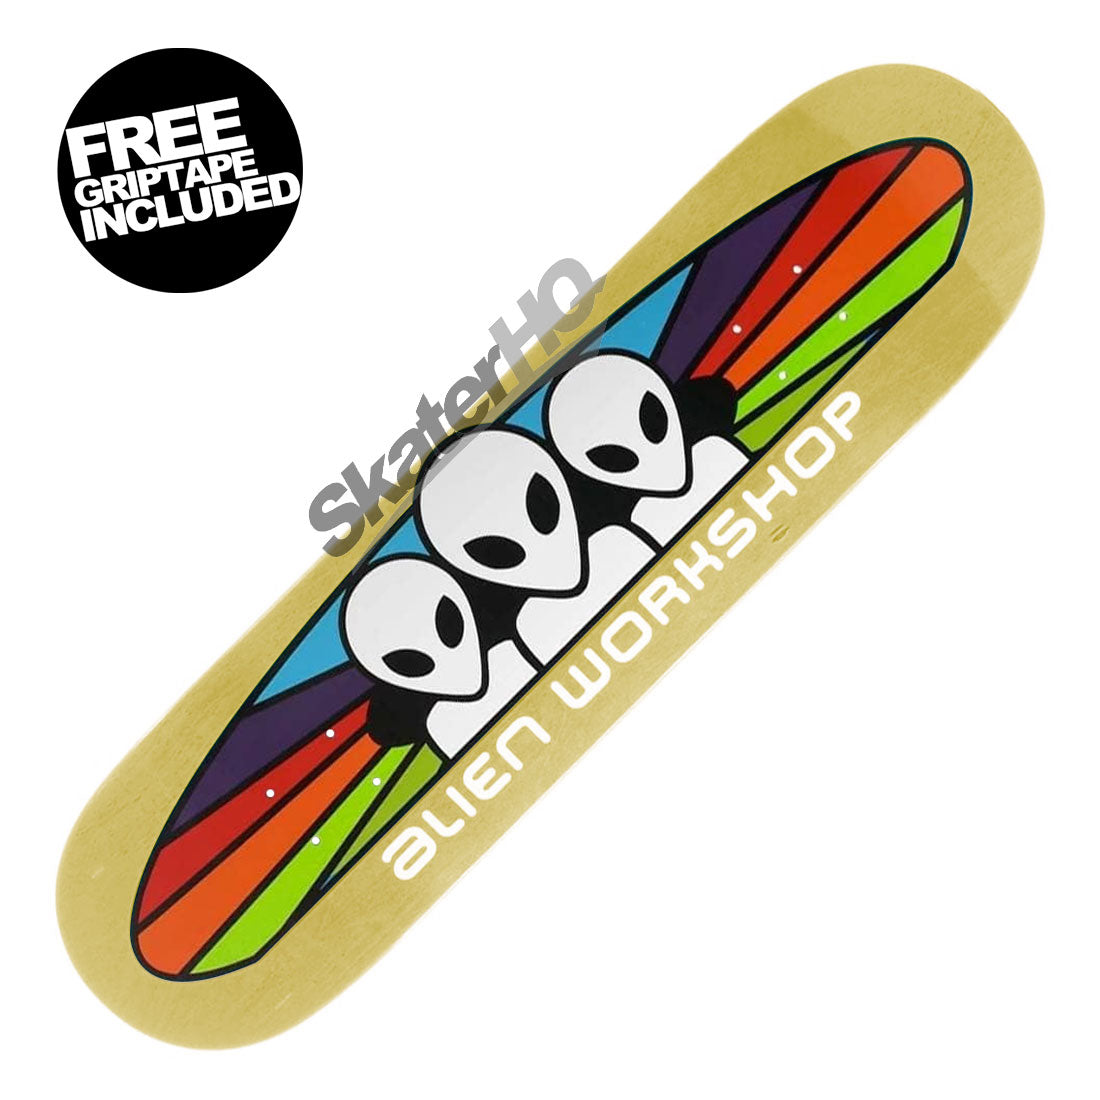 Alien Workshop Spectrum Stain 7.875 Deck - Natural Skateboard Decks Modern Street